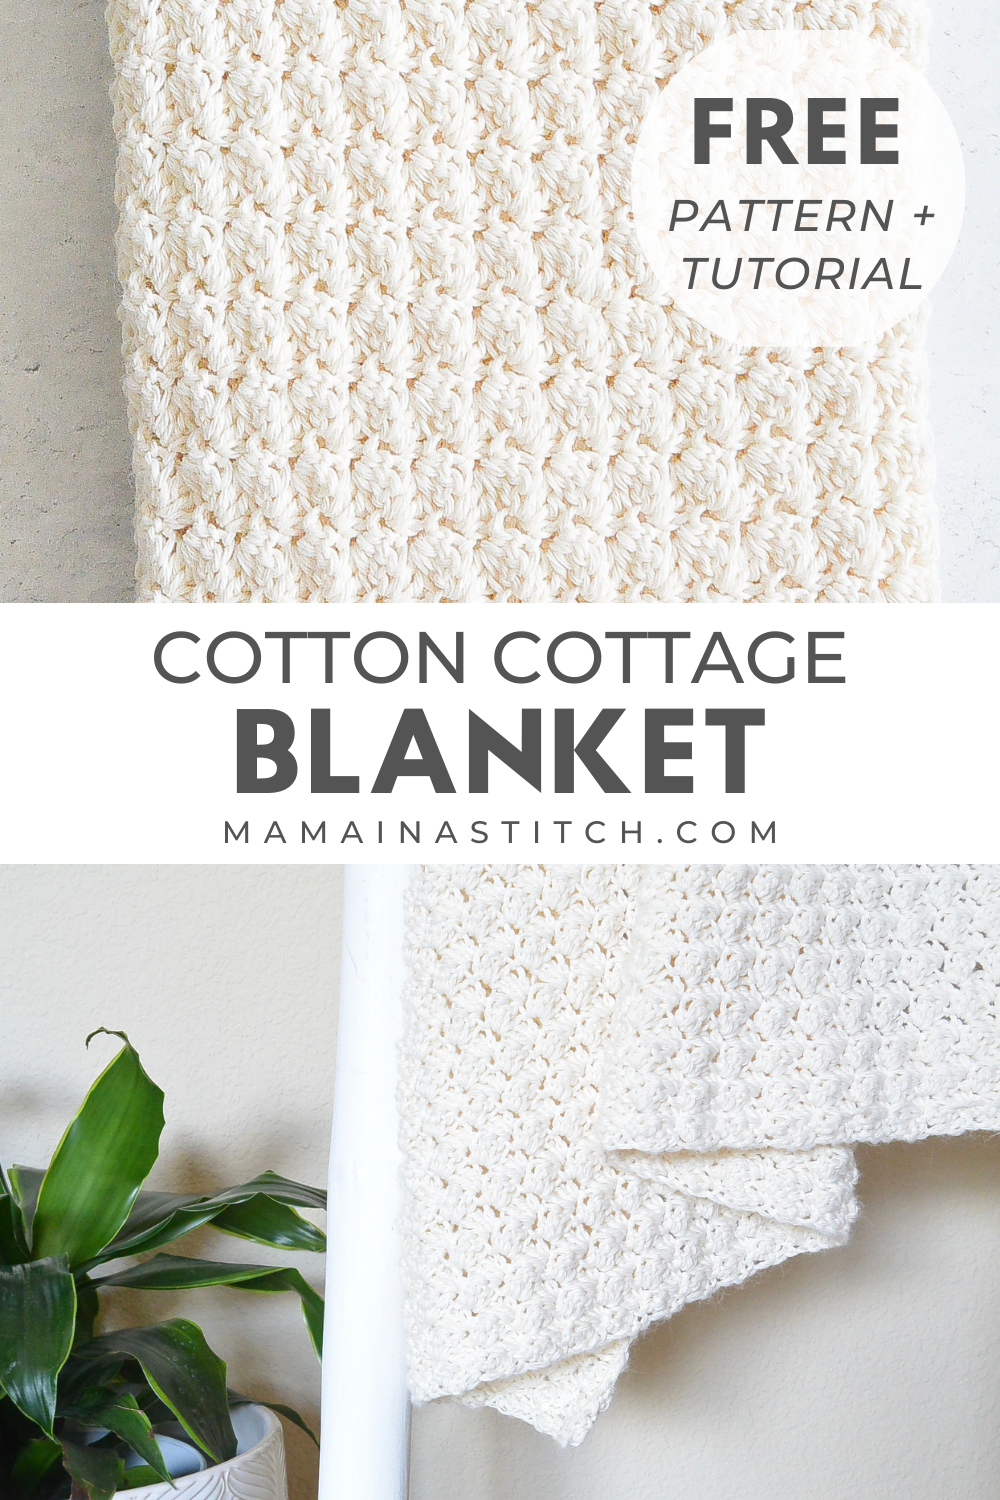 Cotton Blanket Crochet Pattern